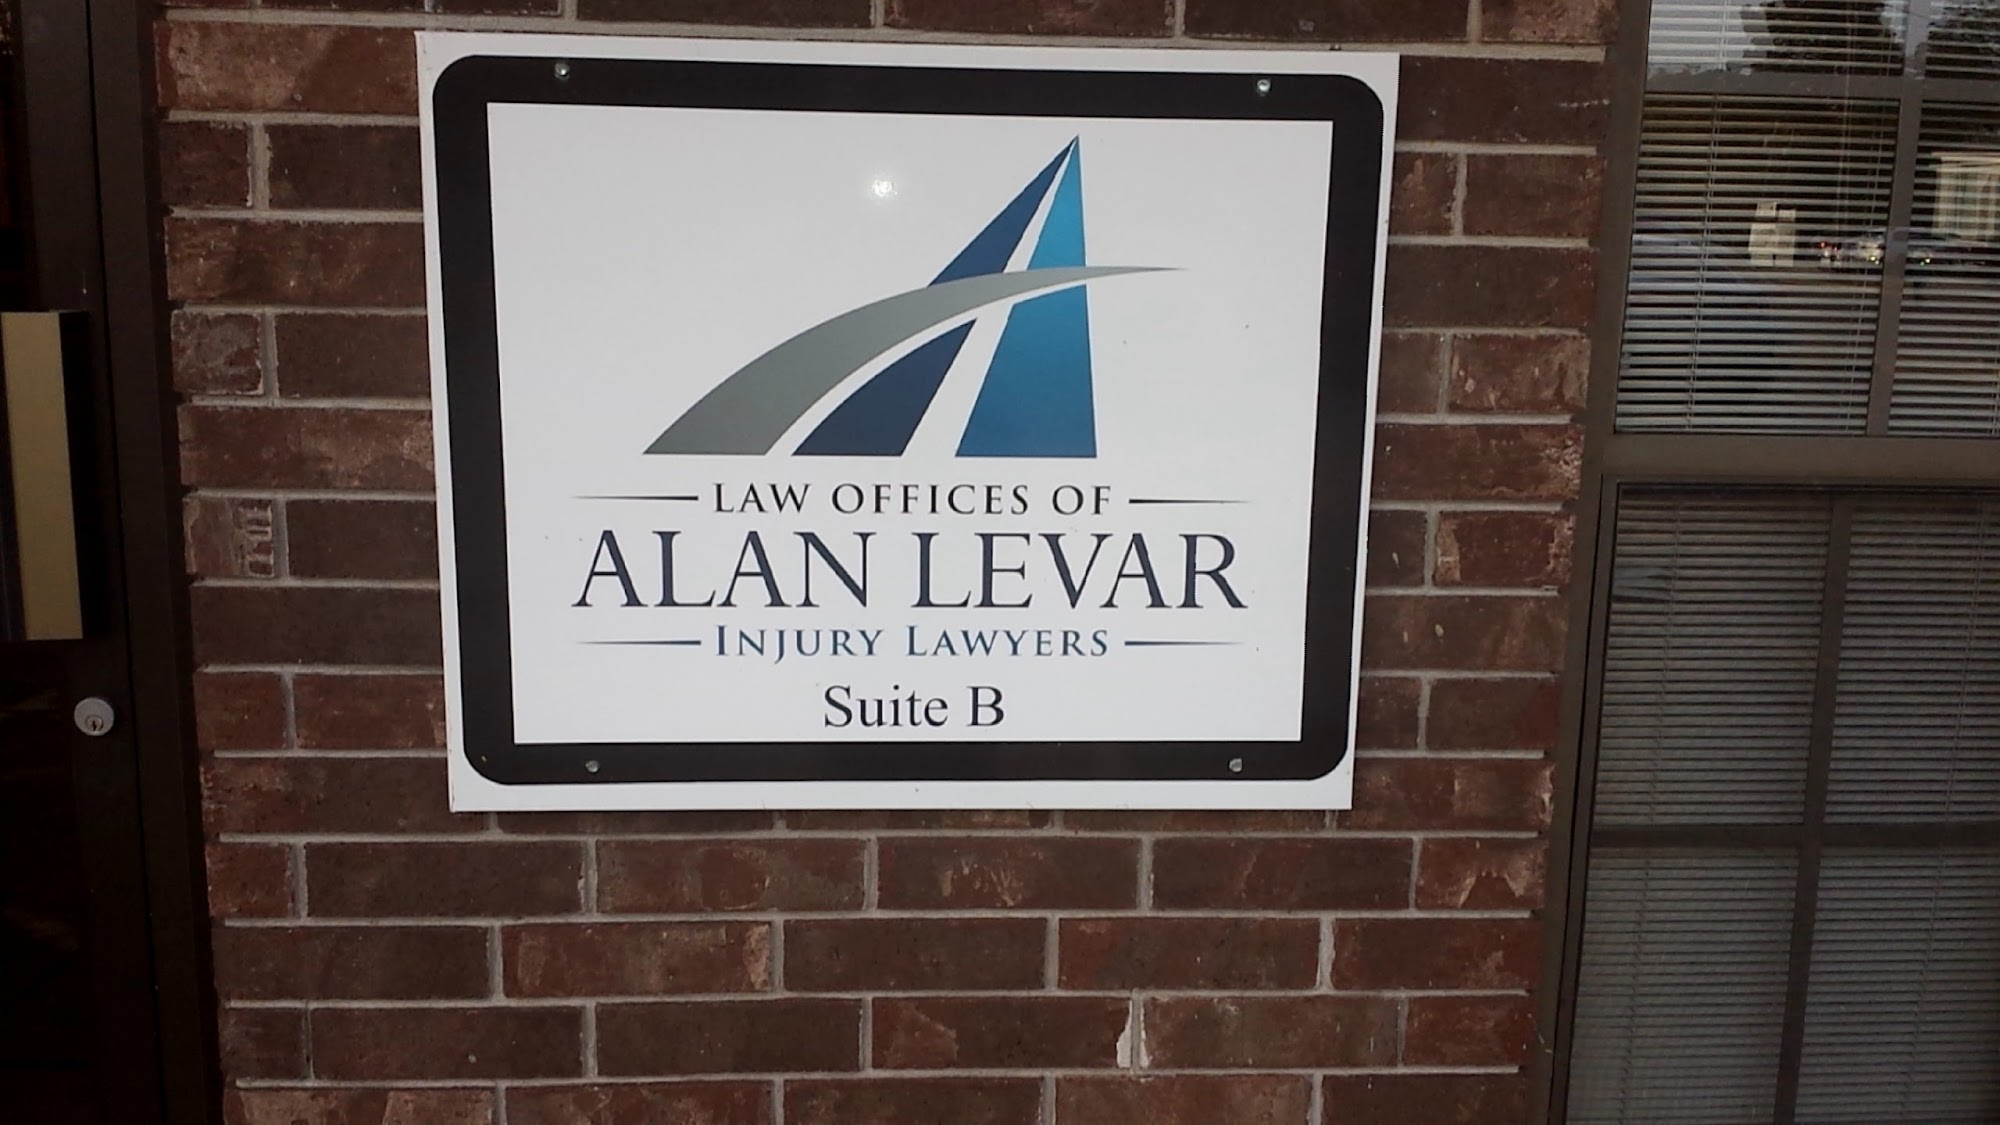 Law Offices of Alan LeVar 702 Caddo St, Arkadelphia Arkansas 71923